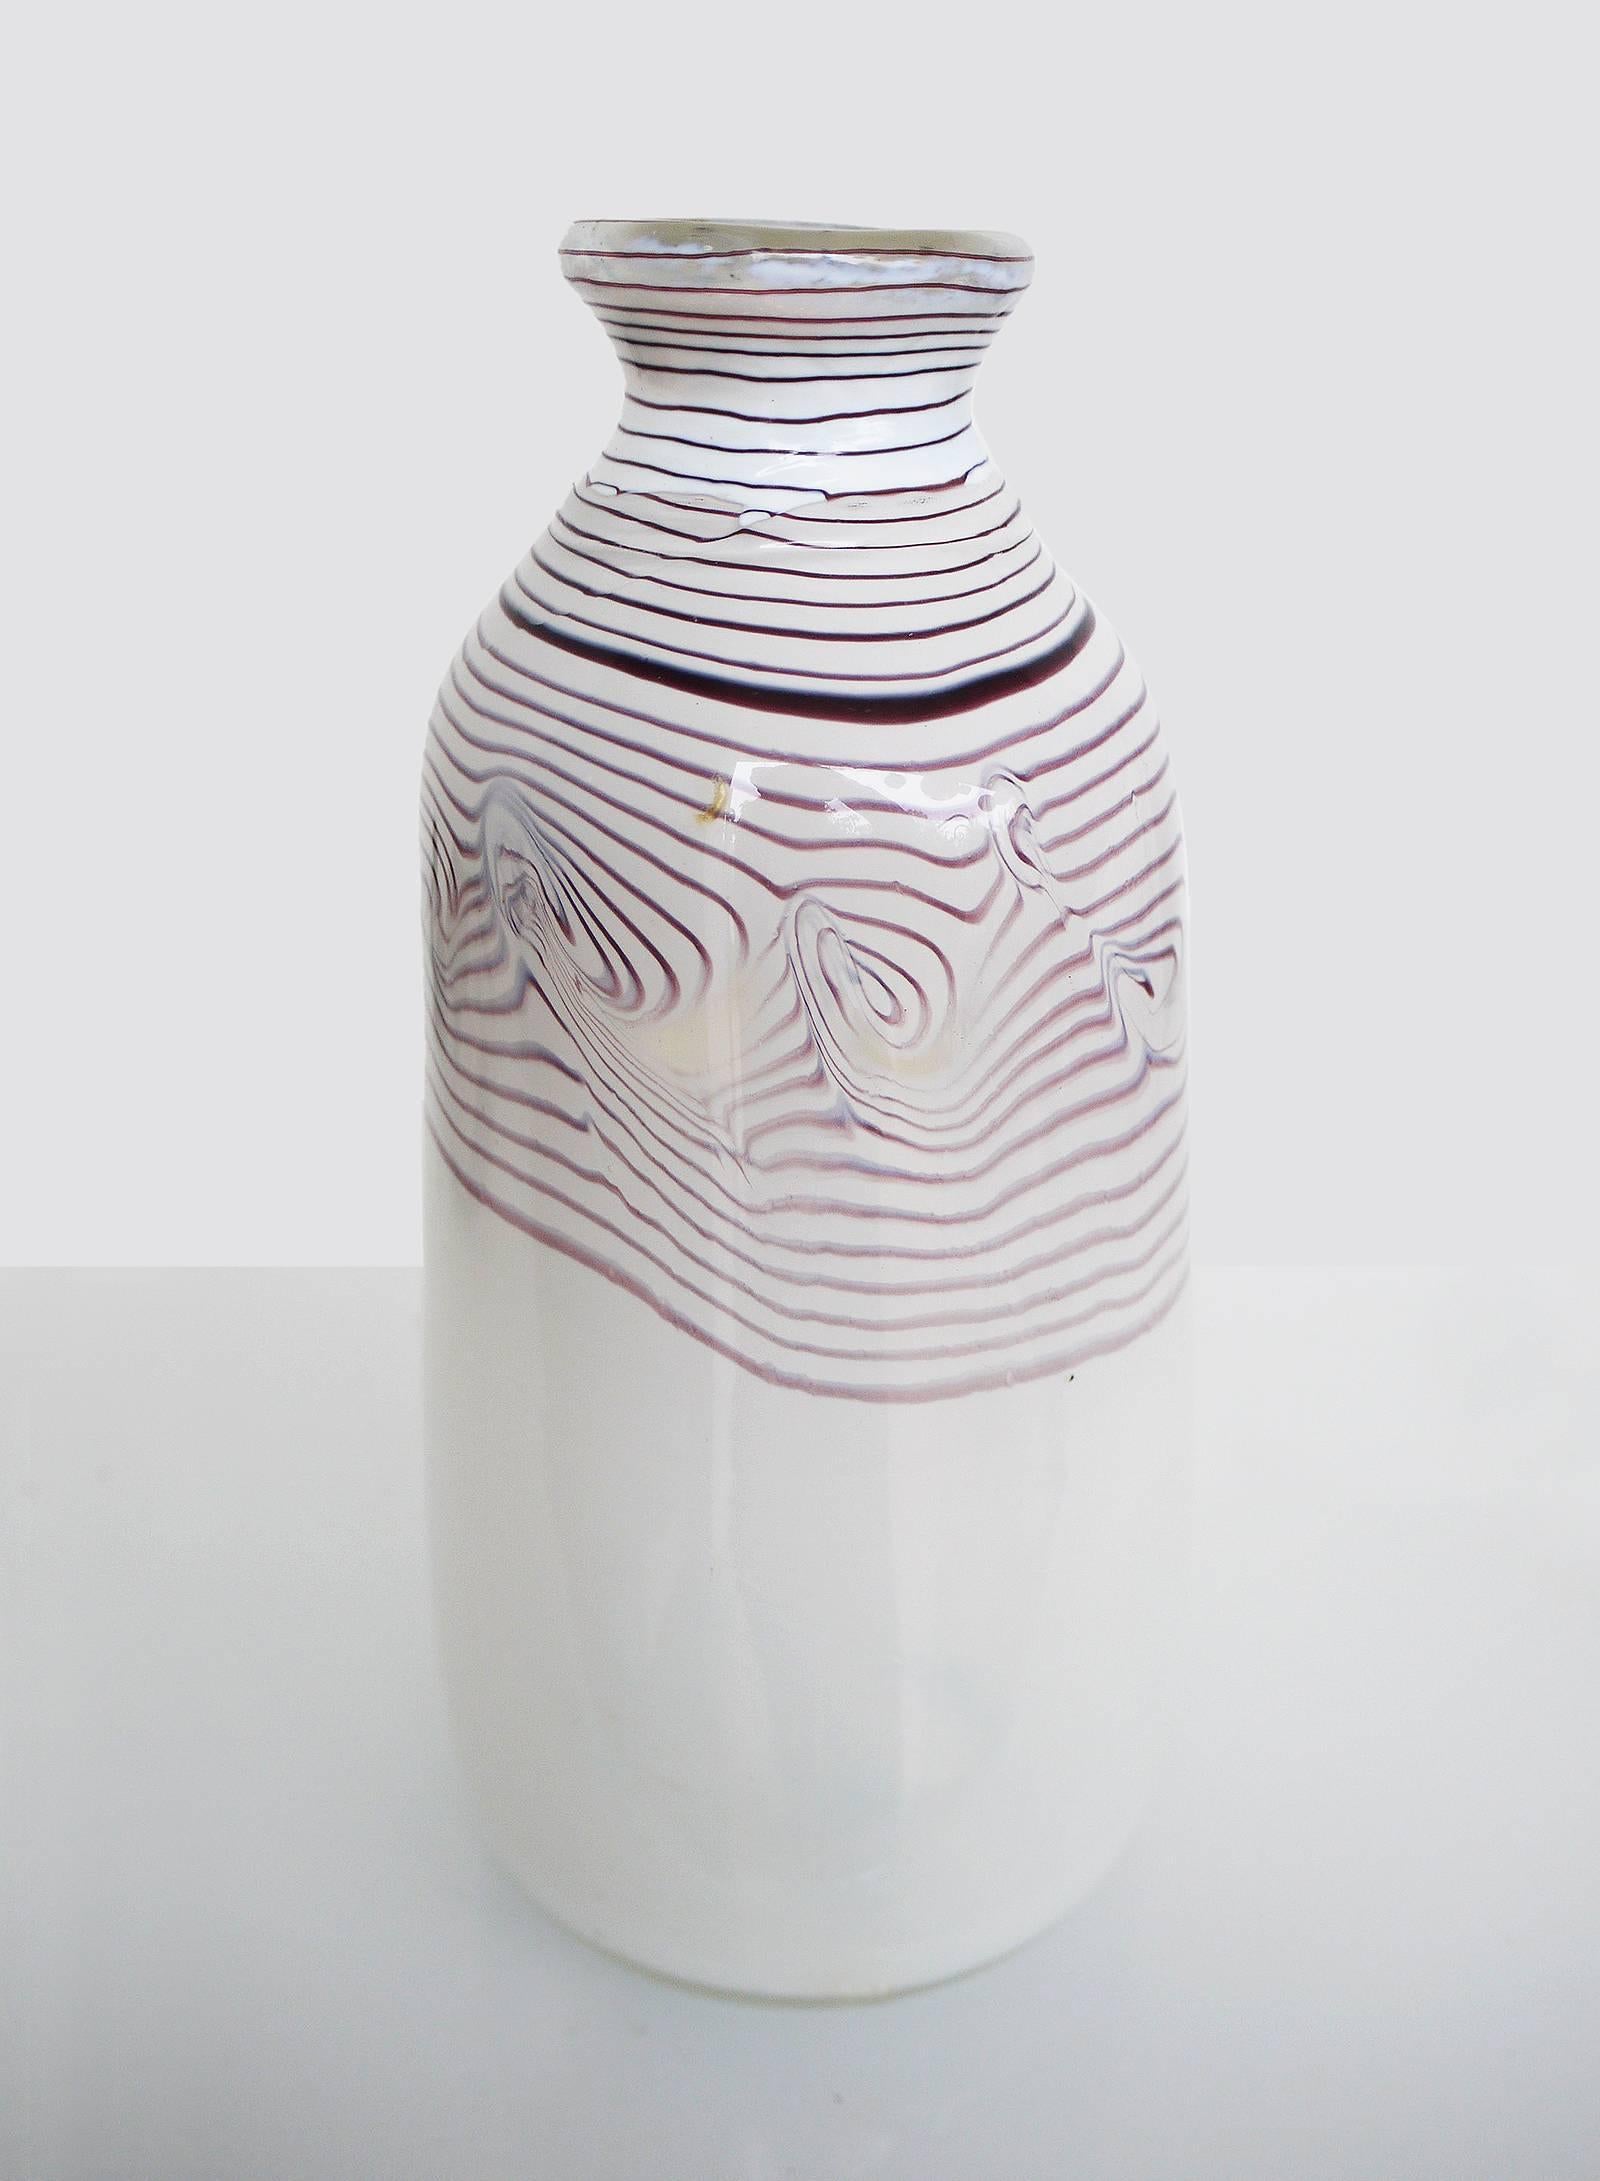 Milchglasvase mit lila Fadeneinschlüssen. Erwin Eisch (geboren 1927 in Frauenau, Deutschland) ist einer der Begründer des Studioglases in Europa. Die Vase stammt aus den 1970er-1980er Jahren, unten mit eingeritzter Signatur.
Gewicht: 1262 g/2.78 lb. 